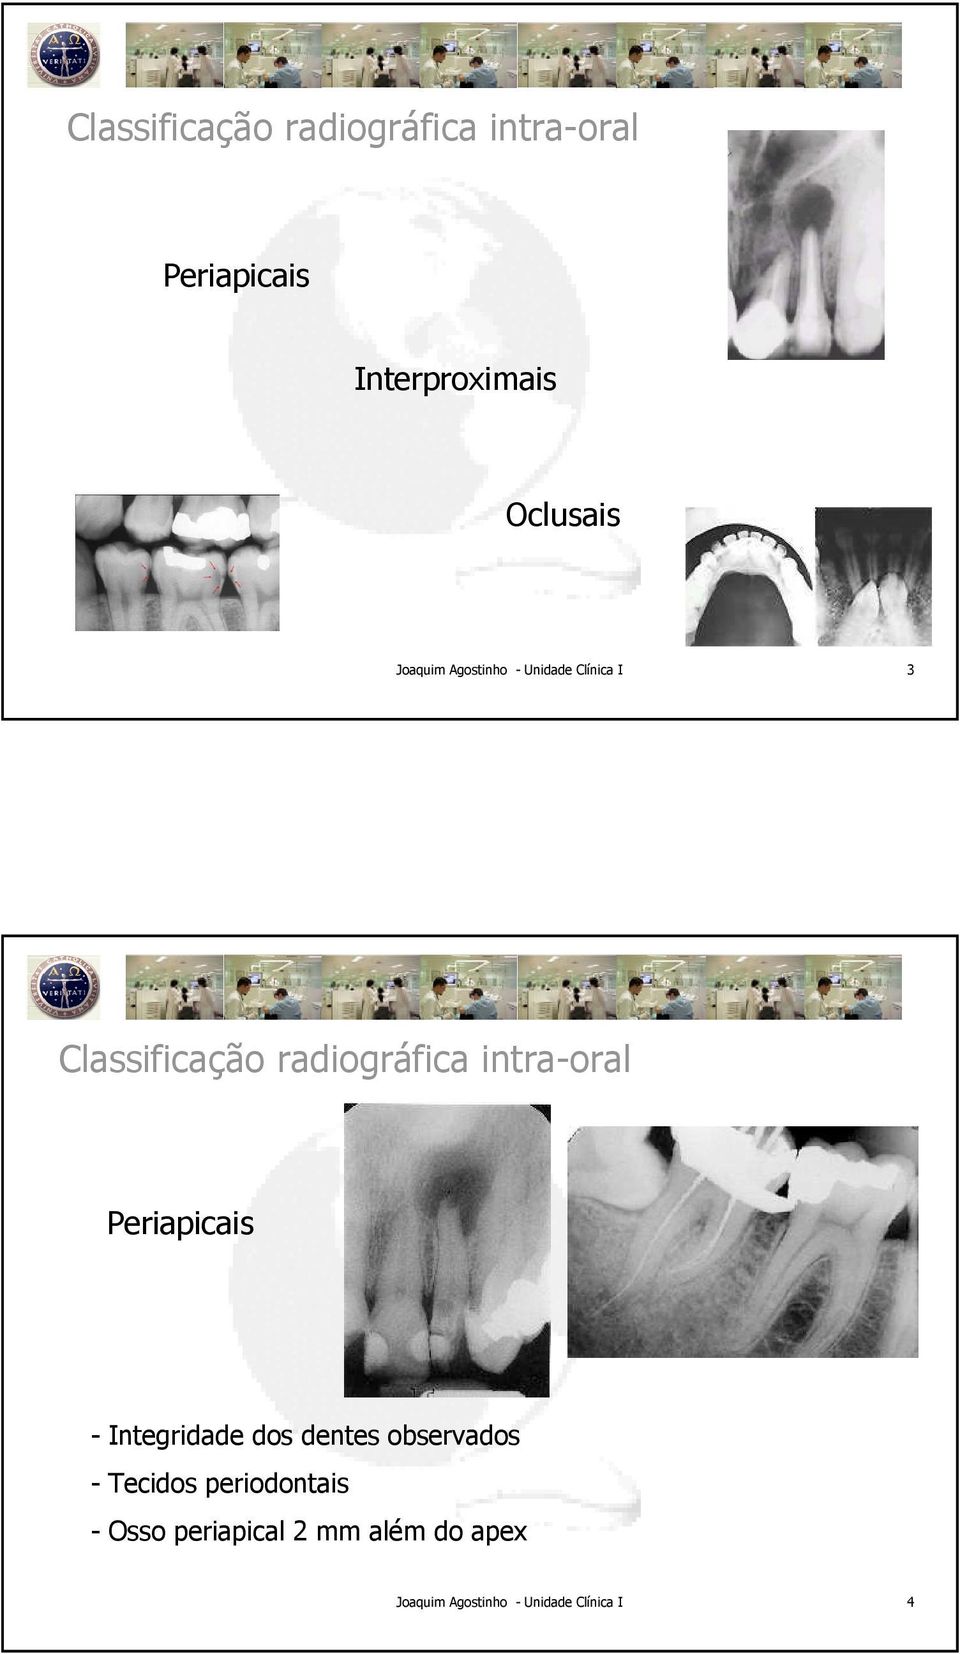 observados - Tecidos periodontais - Osso periapical 2